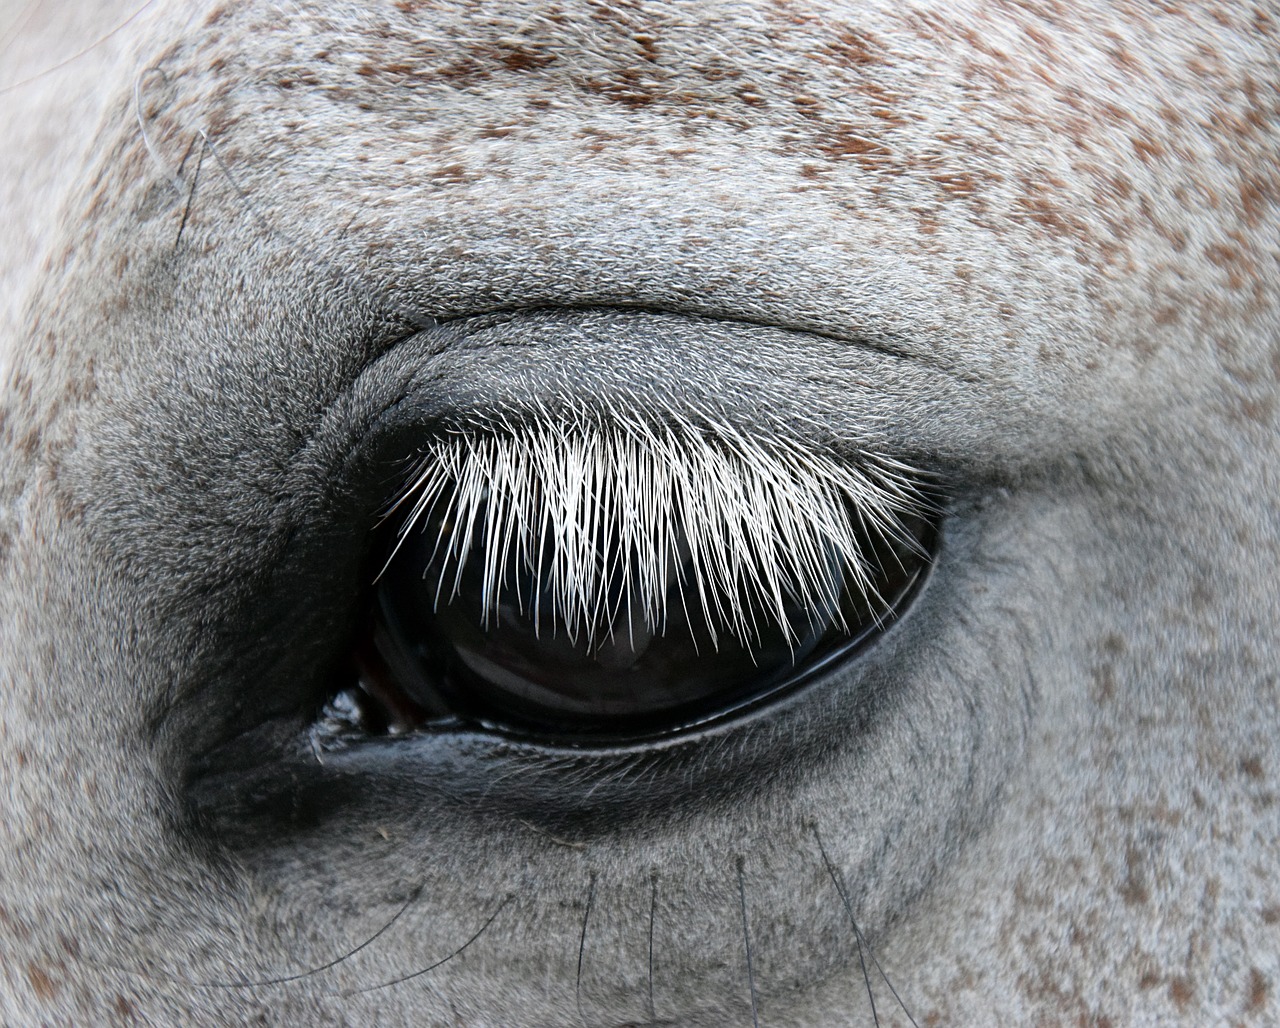 mold horse eye free photo